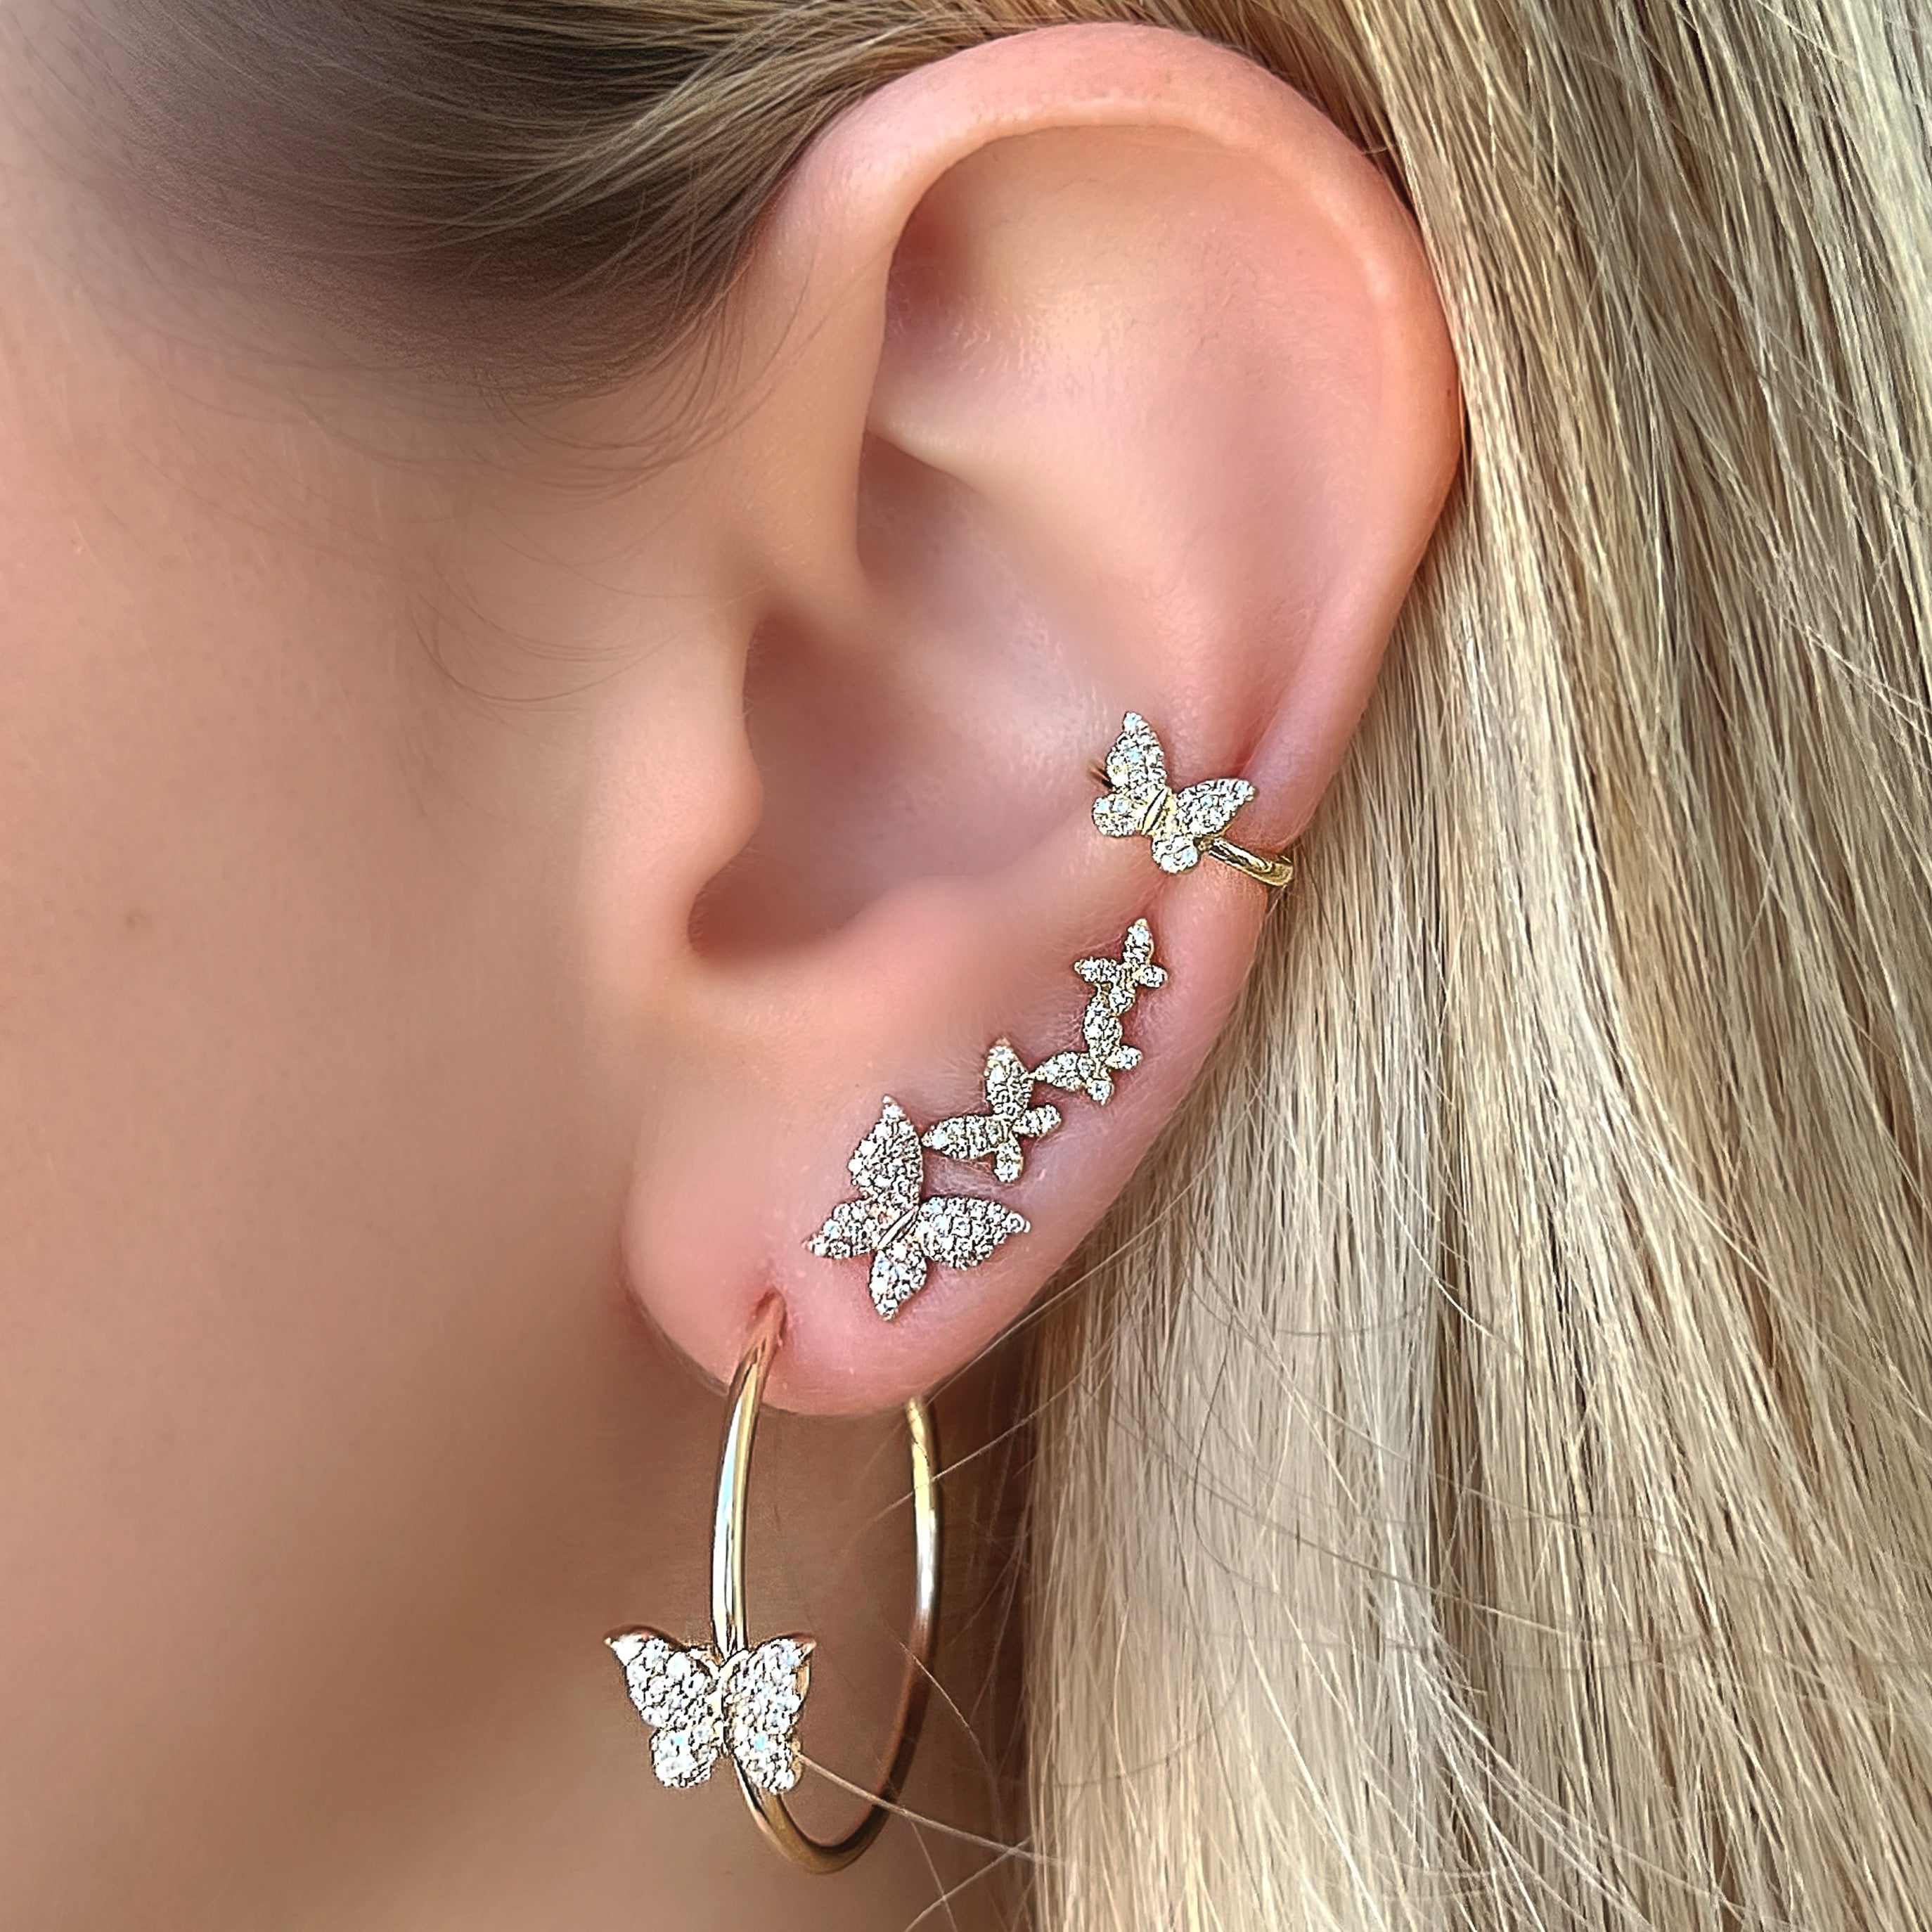 Buy Ear Climber Earrings Gold Ear Cuff Earring Ear Stack Artisan Jewelry  Mismatched Earrings Gift for Women ECF009N Online in India - Etsy